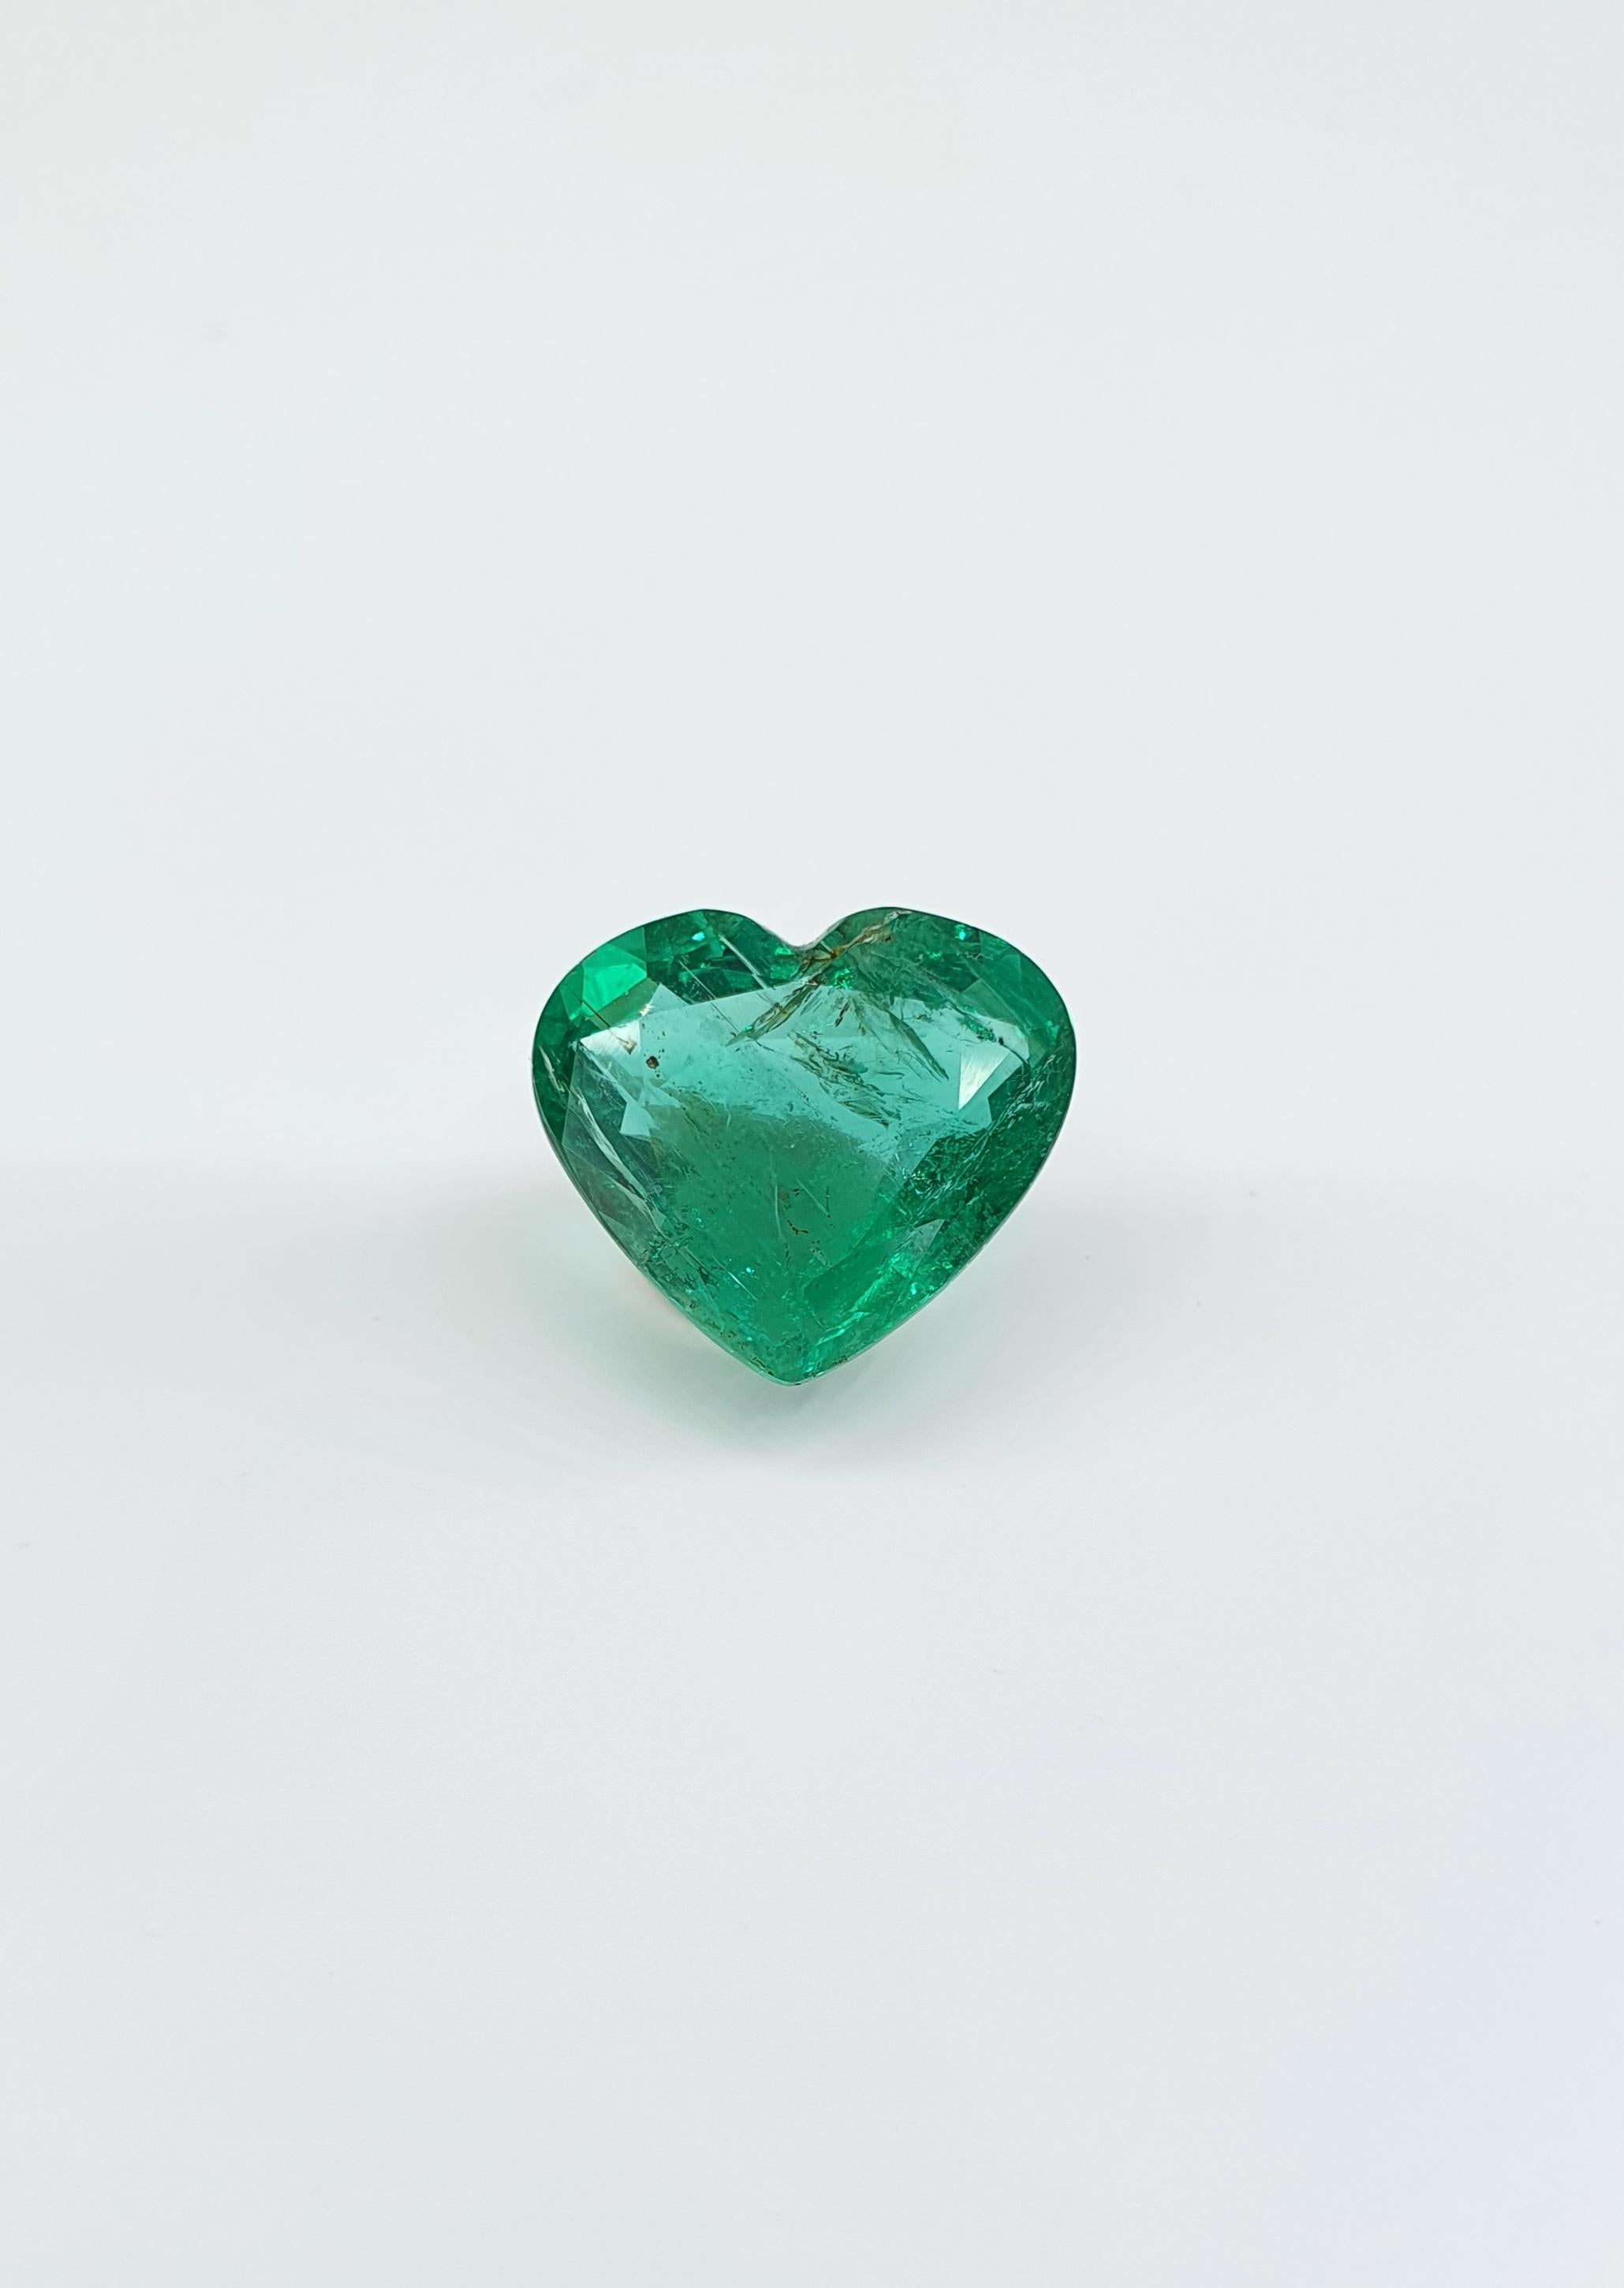 Atemberaubender sambischer Smaragd in Herzform 
4.76 ct
Geringfügige Verbesserung der natürlichen Öle.
Der Stein enthält natürliche Mikrosplitter, was bei natürlichen Smaragden üblich ist.
 Jedes Schmuckstück kann in Ihrem Auftrag hergestellt